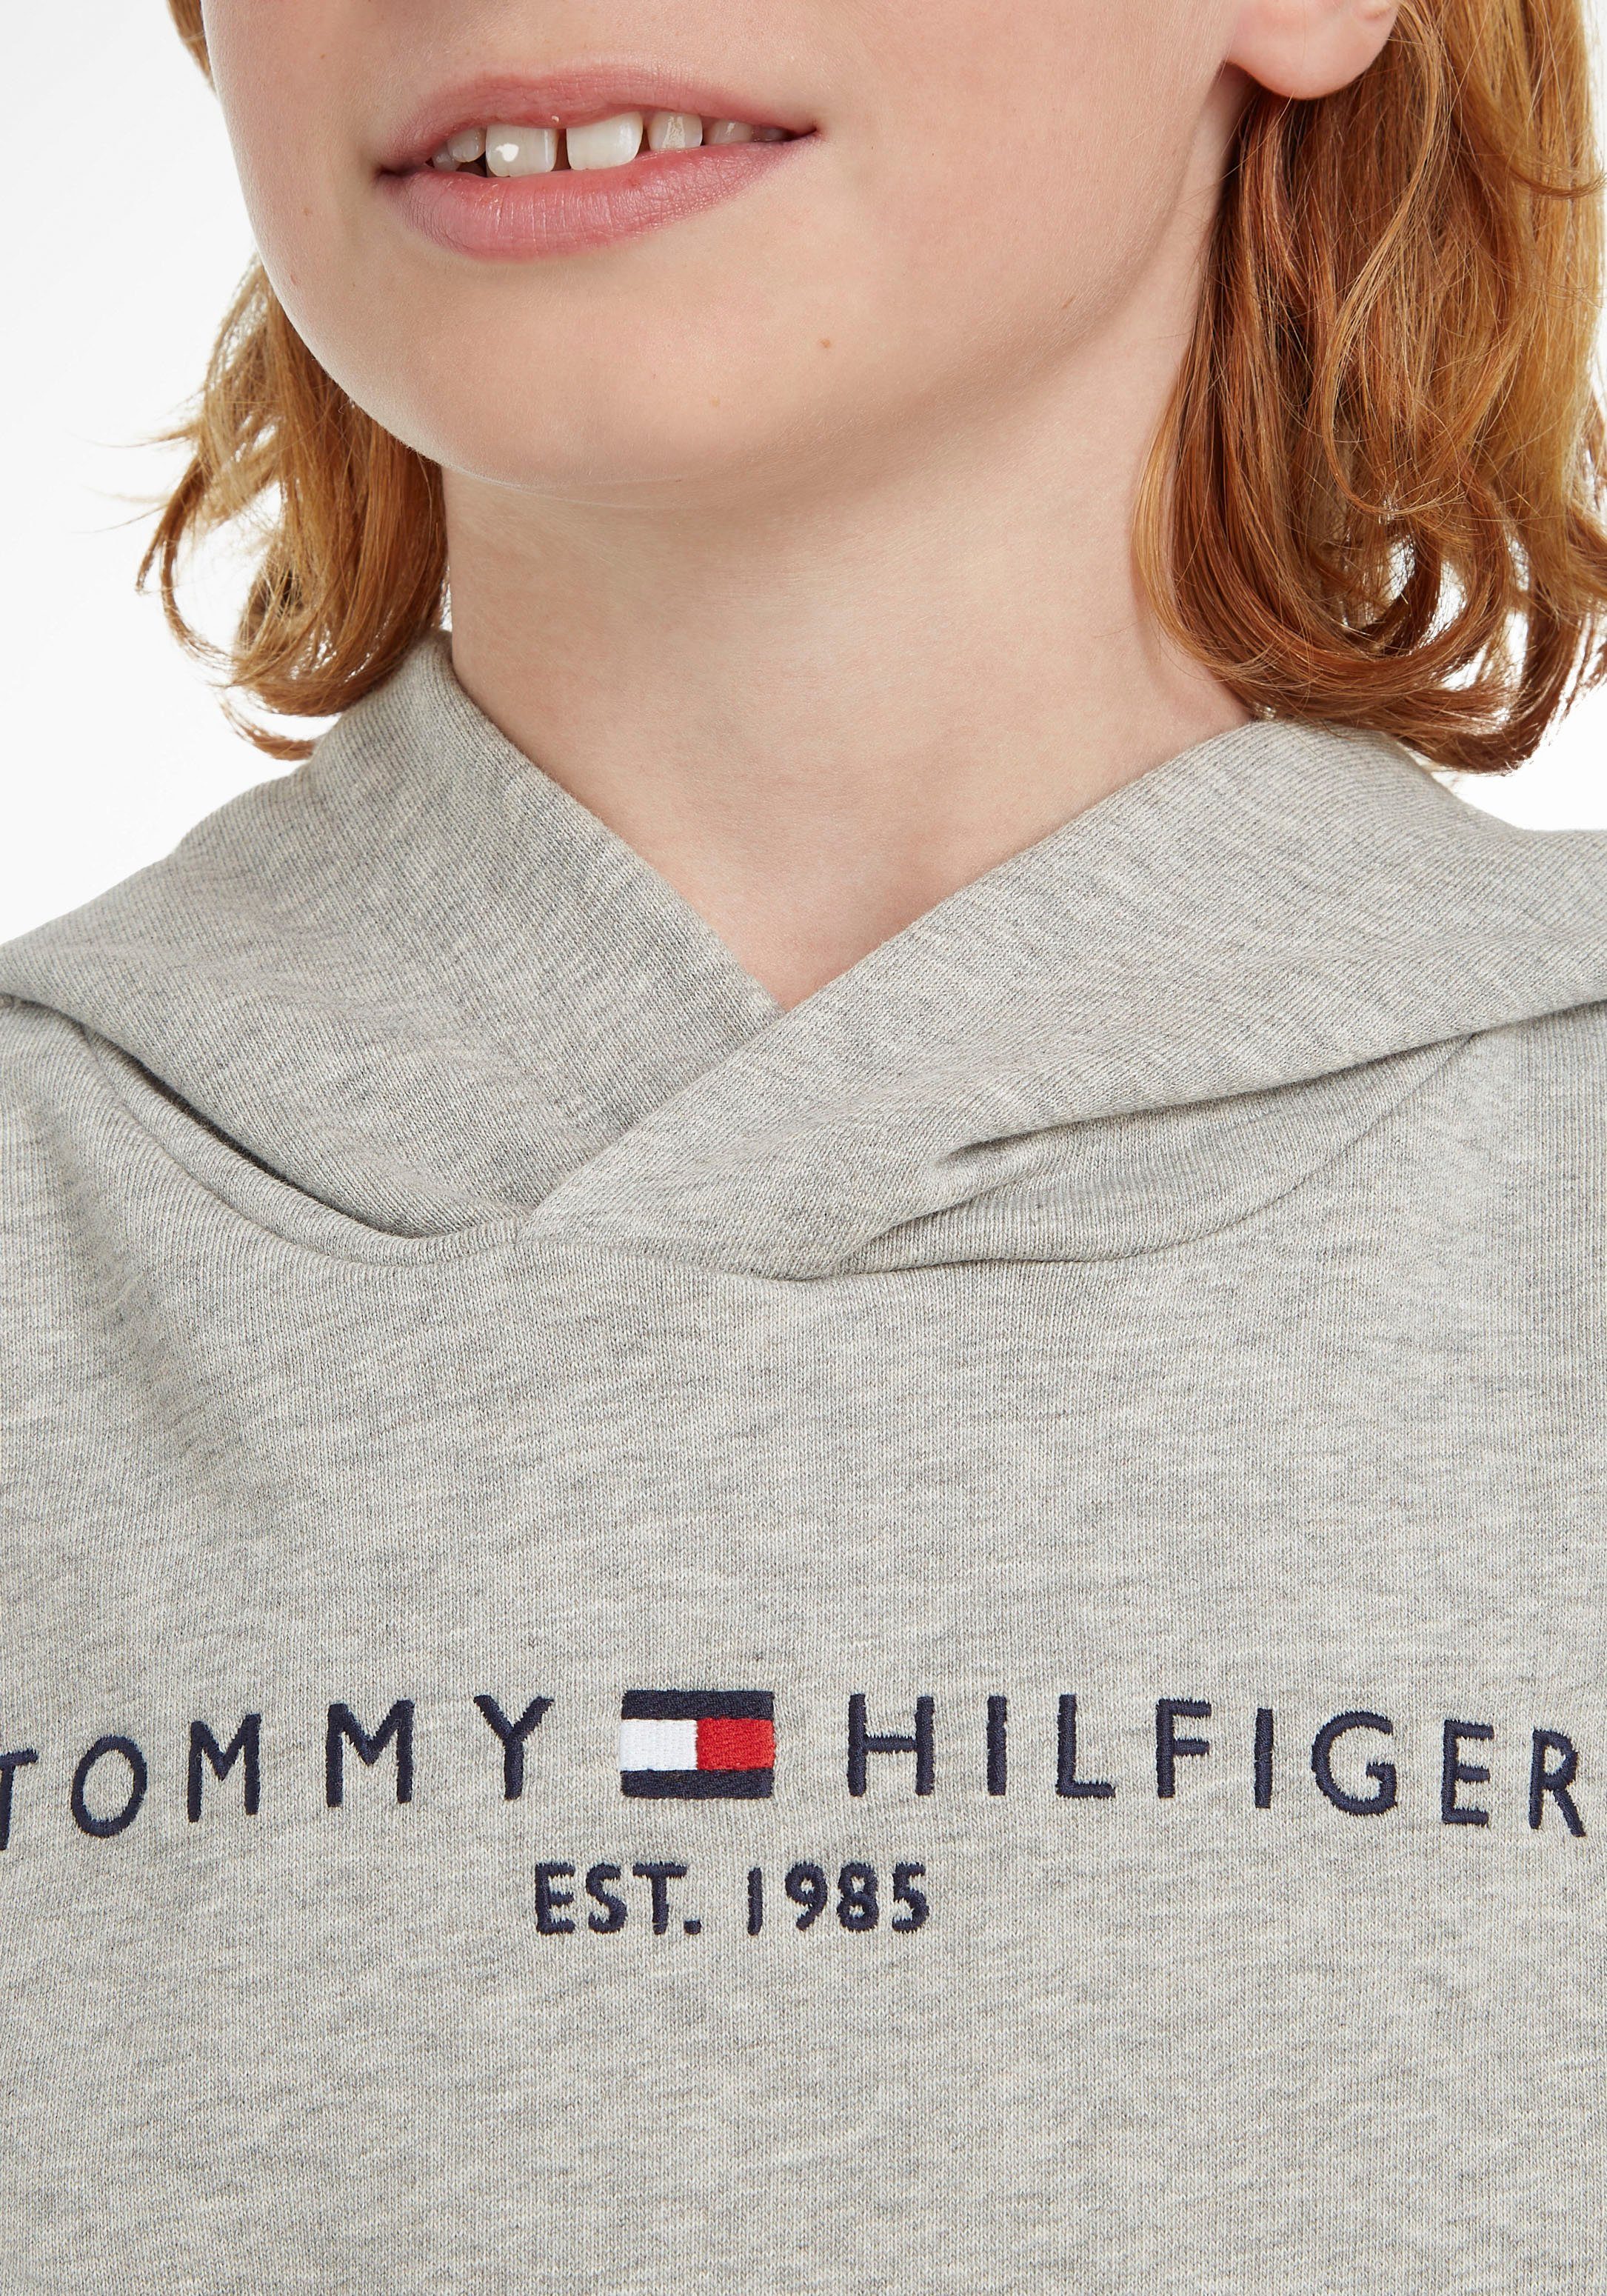 Hilfiger ESSENTIAL Jungen HOODIE Kapuzensweatshirt Kids Junior MiniMe,für Mädchen Tommy und Kinder